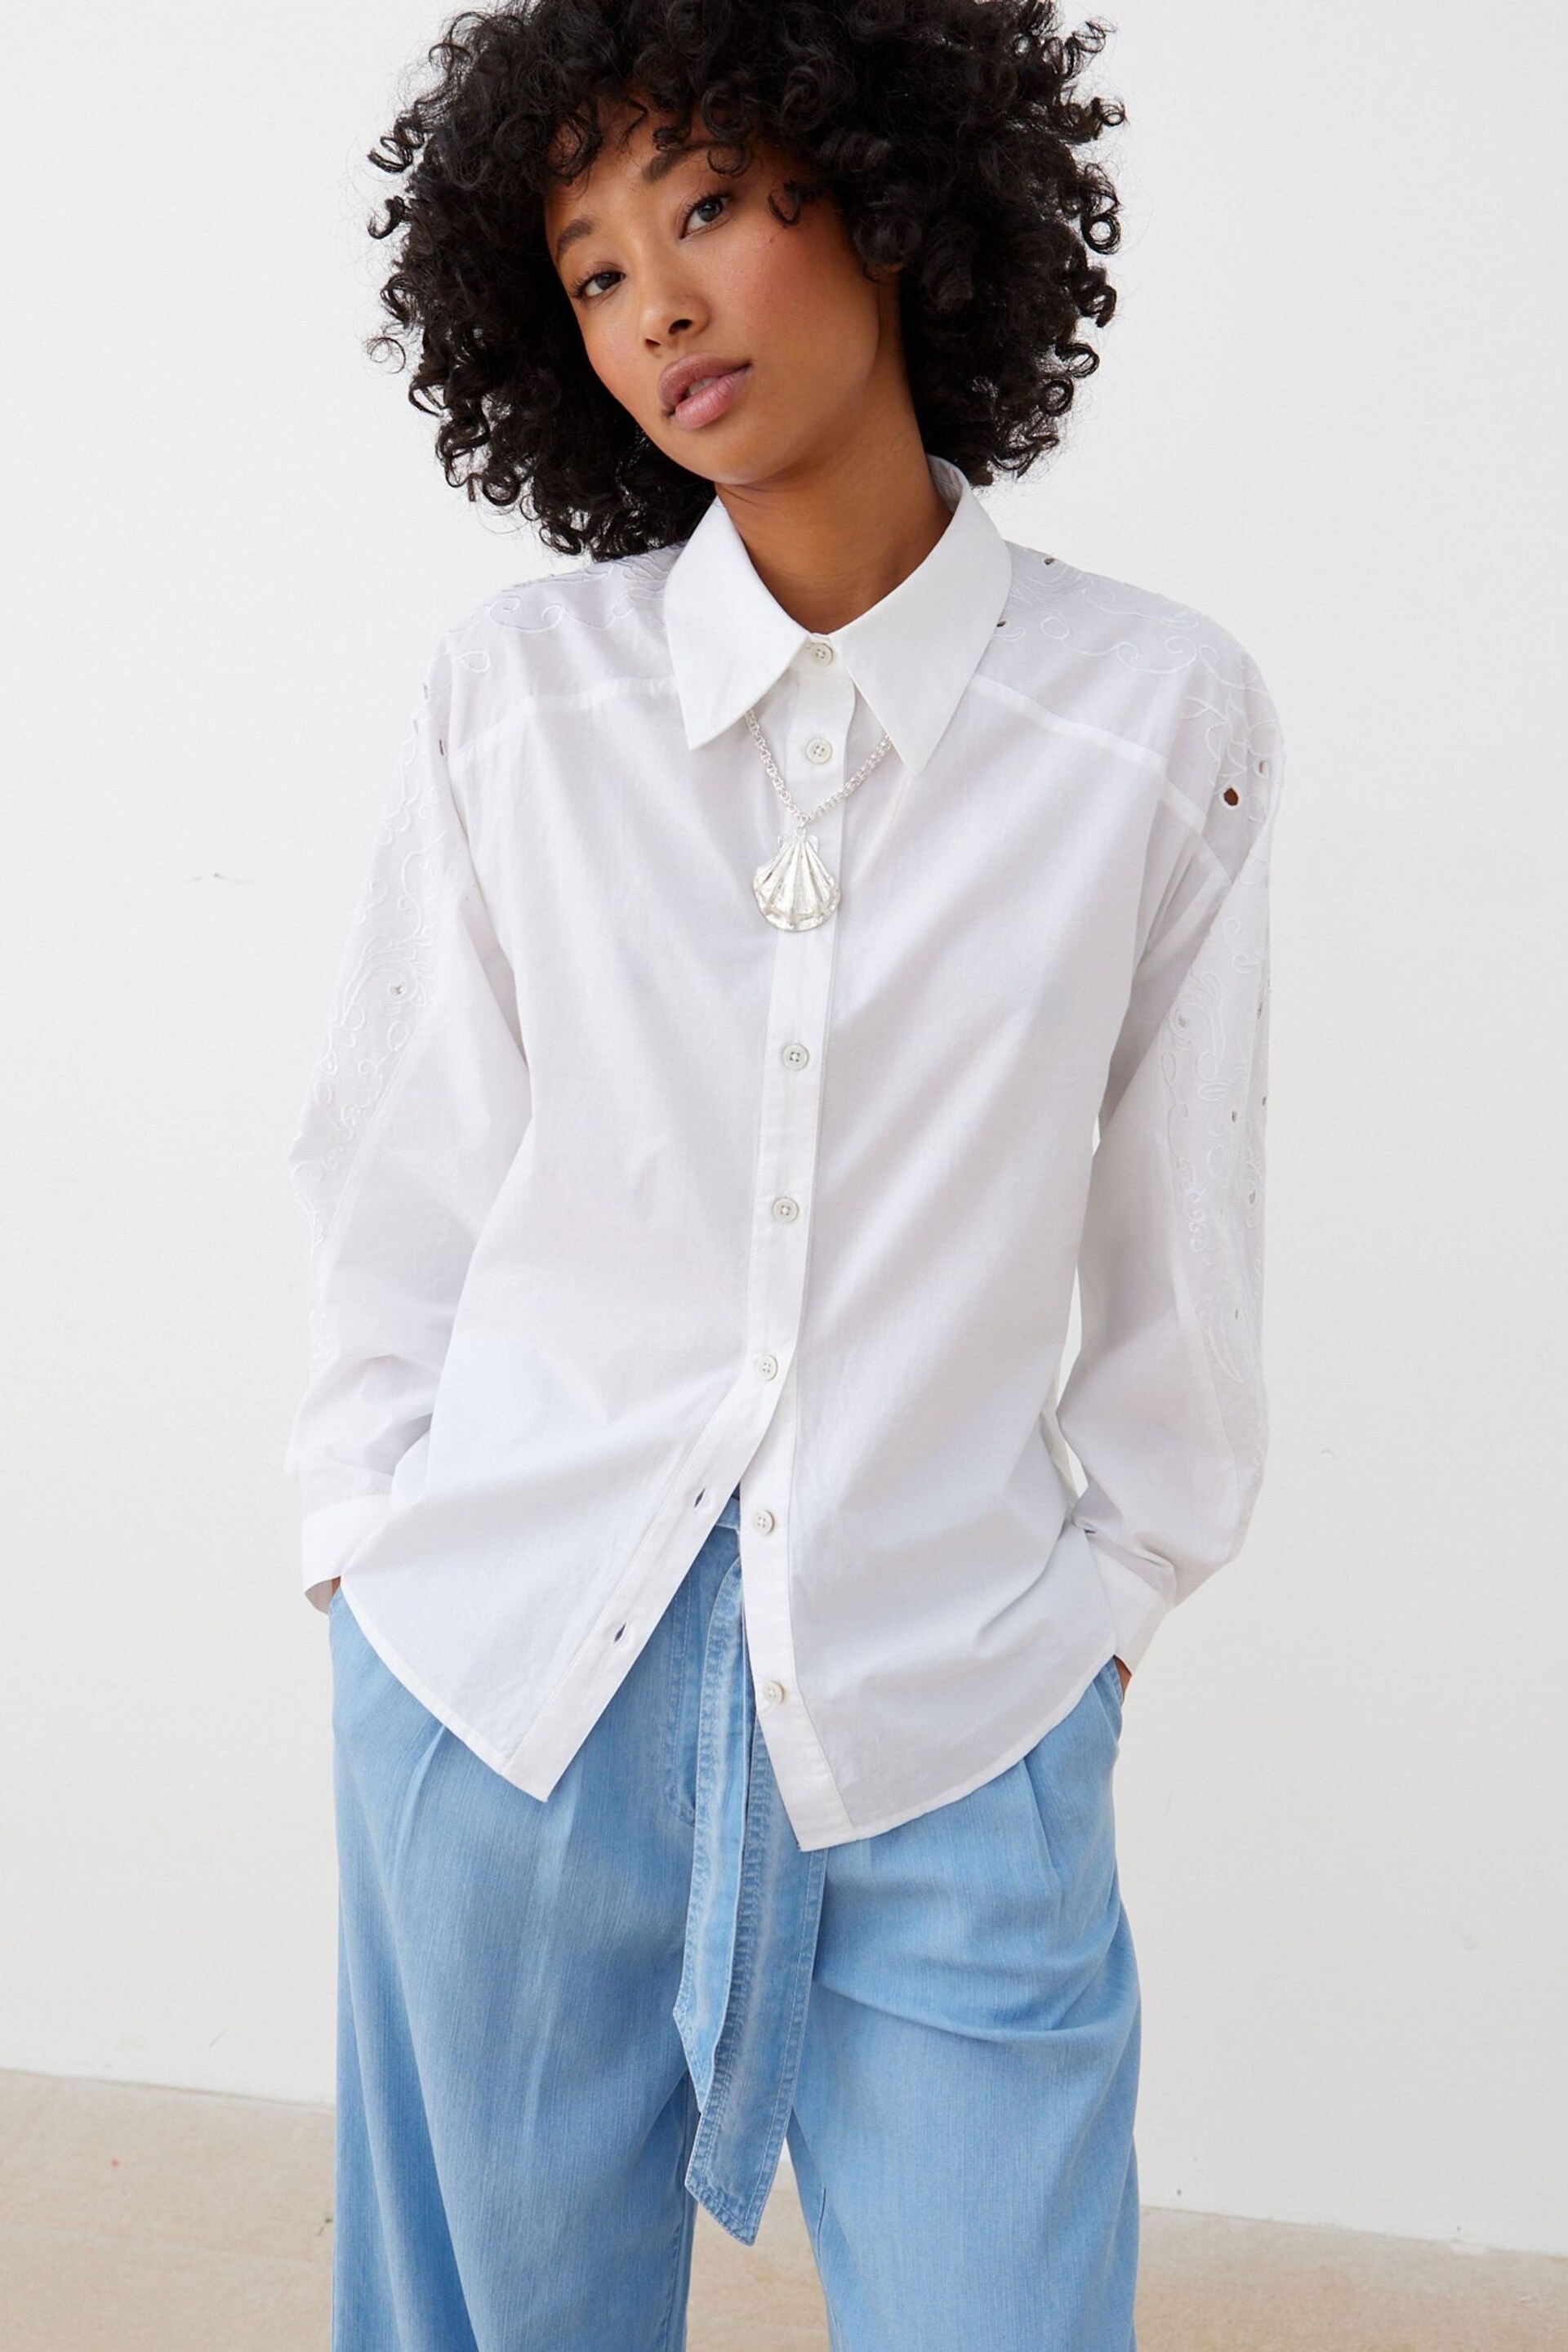 Oliver Bonas White Embroidered Sleeve Shirt - Image 2 of 8